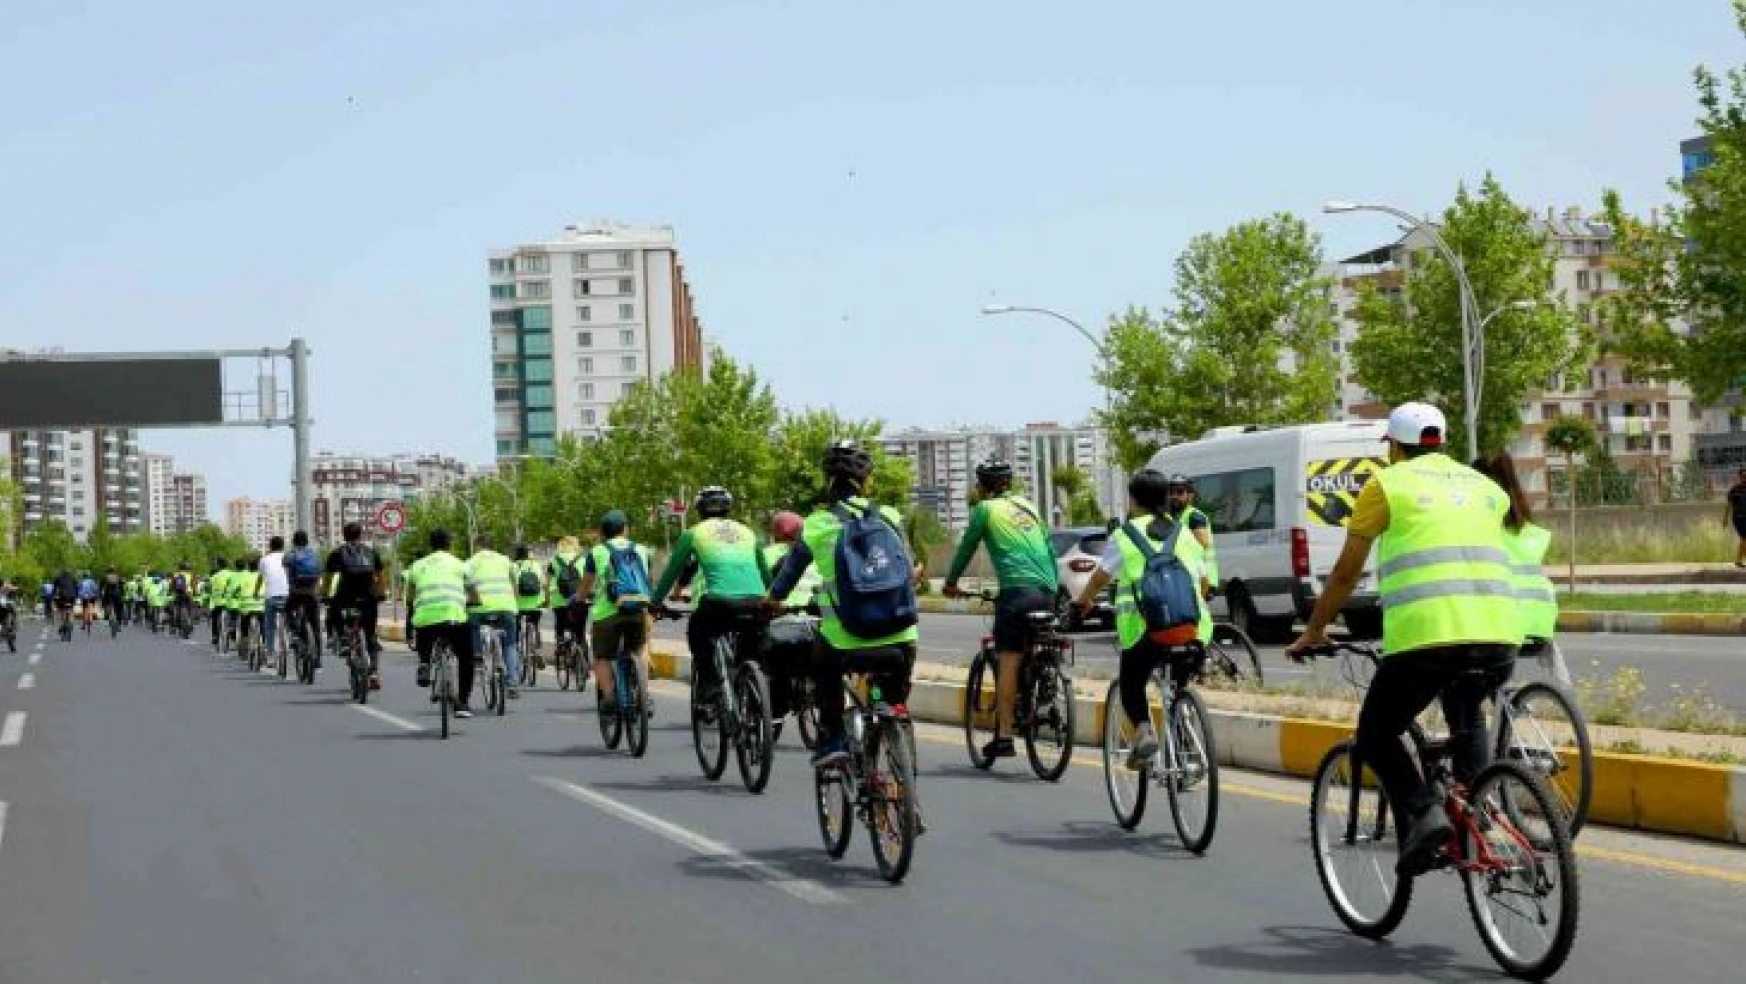 Yenişehir Spor Kulübü Yeşilay bisiklet turuna katıldı